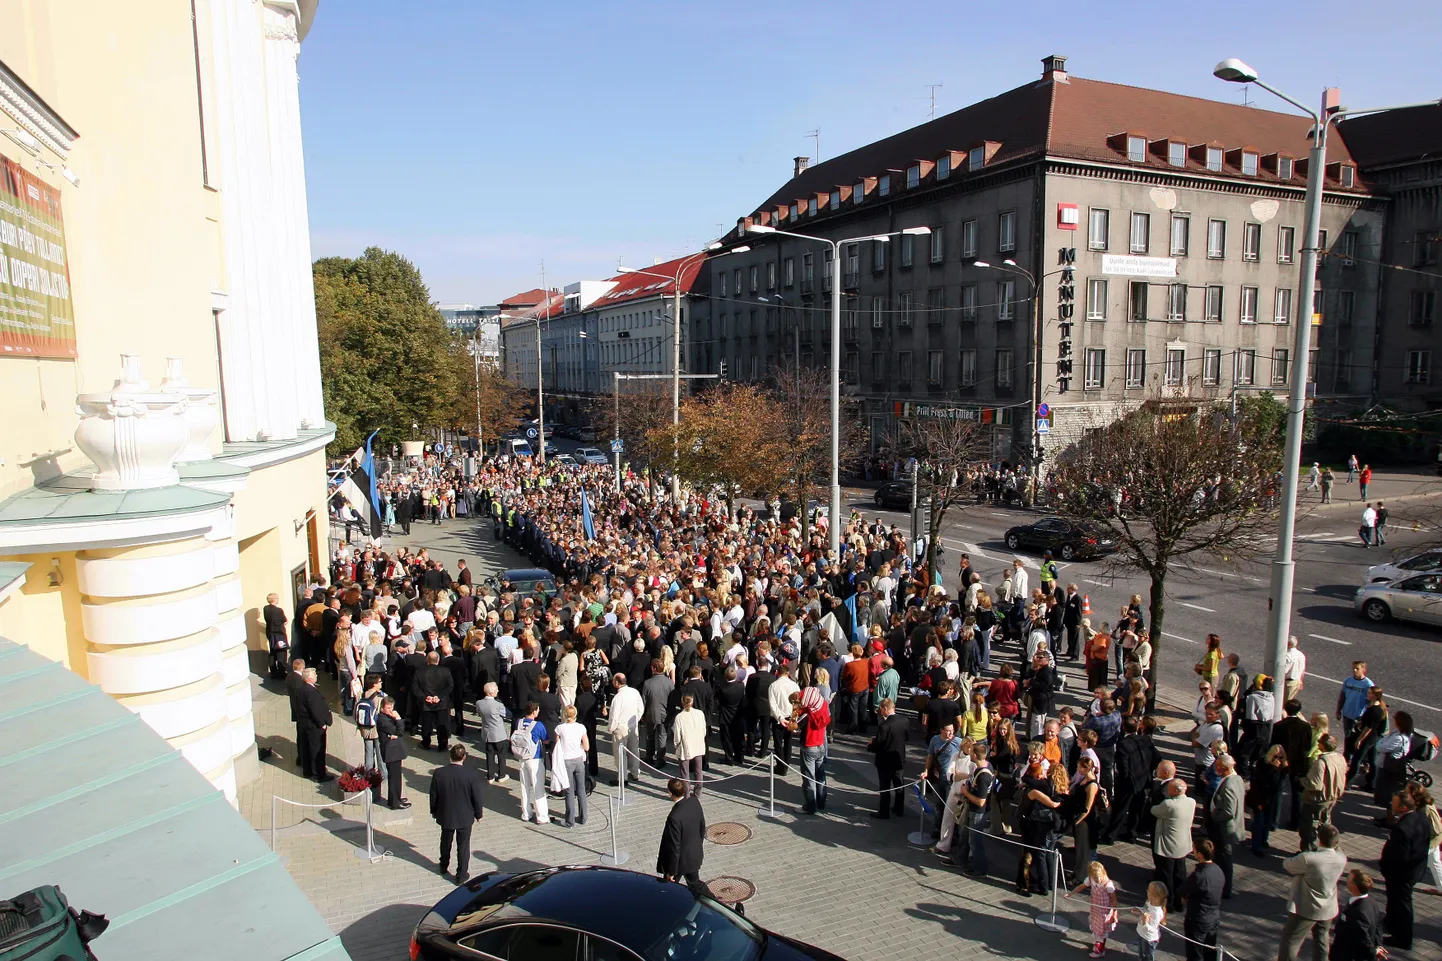 Народ ждет появления президента у театра "Эстония", где заседает коллегия выборщиков.